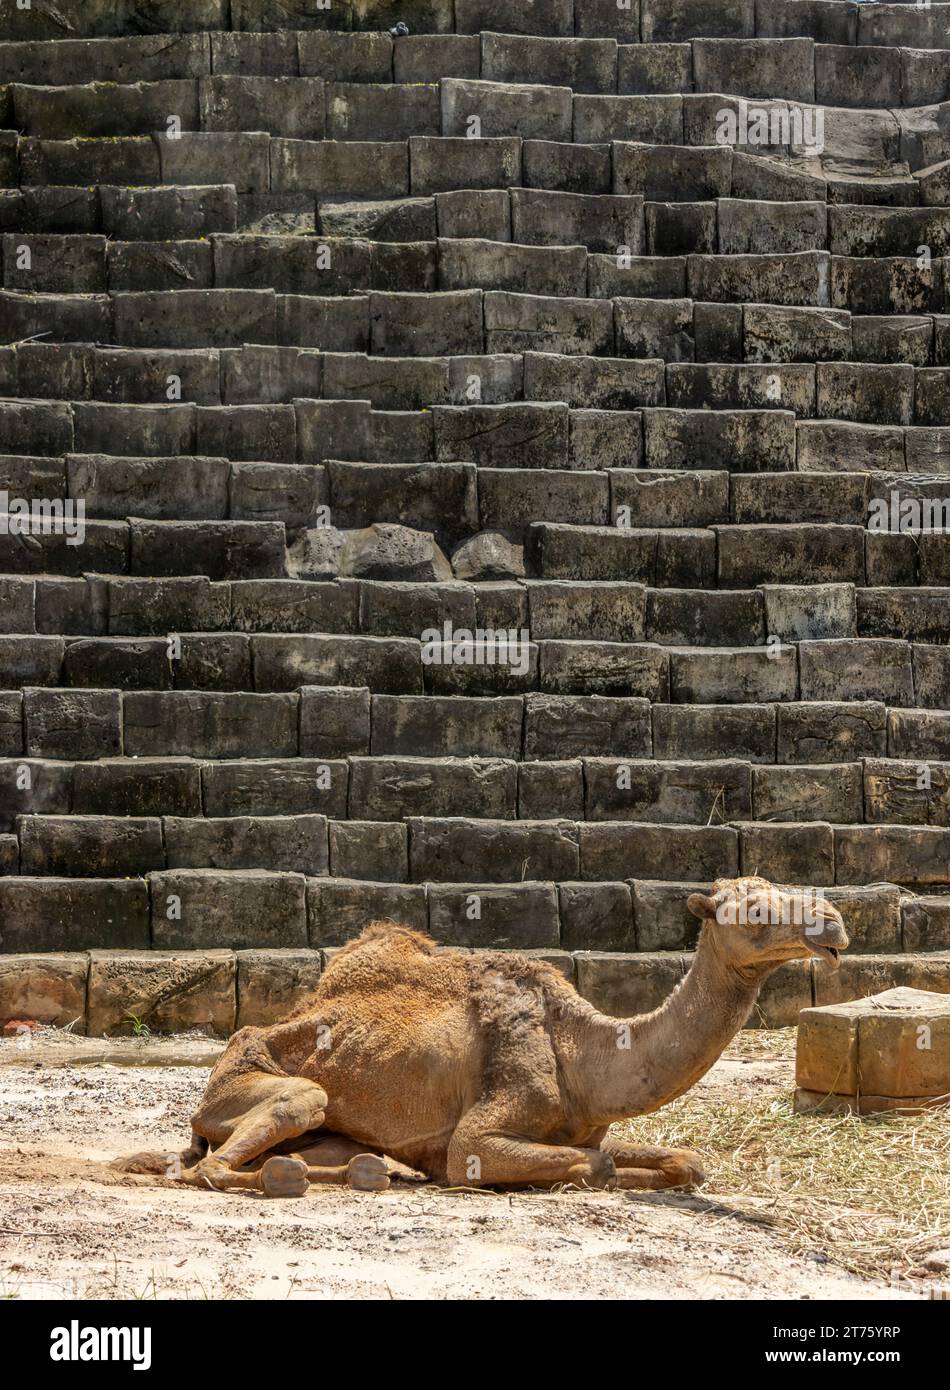 Ein ausgemerderter Dromedar - ein arabisches Kamel, das neben einer gestuften Struktur liegt Stockfoto